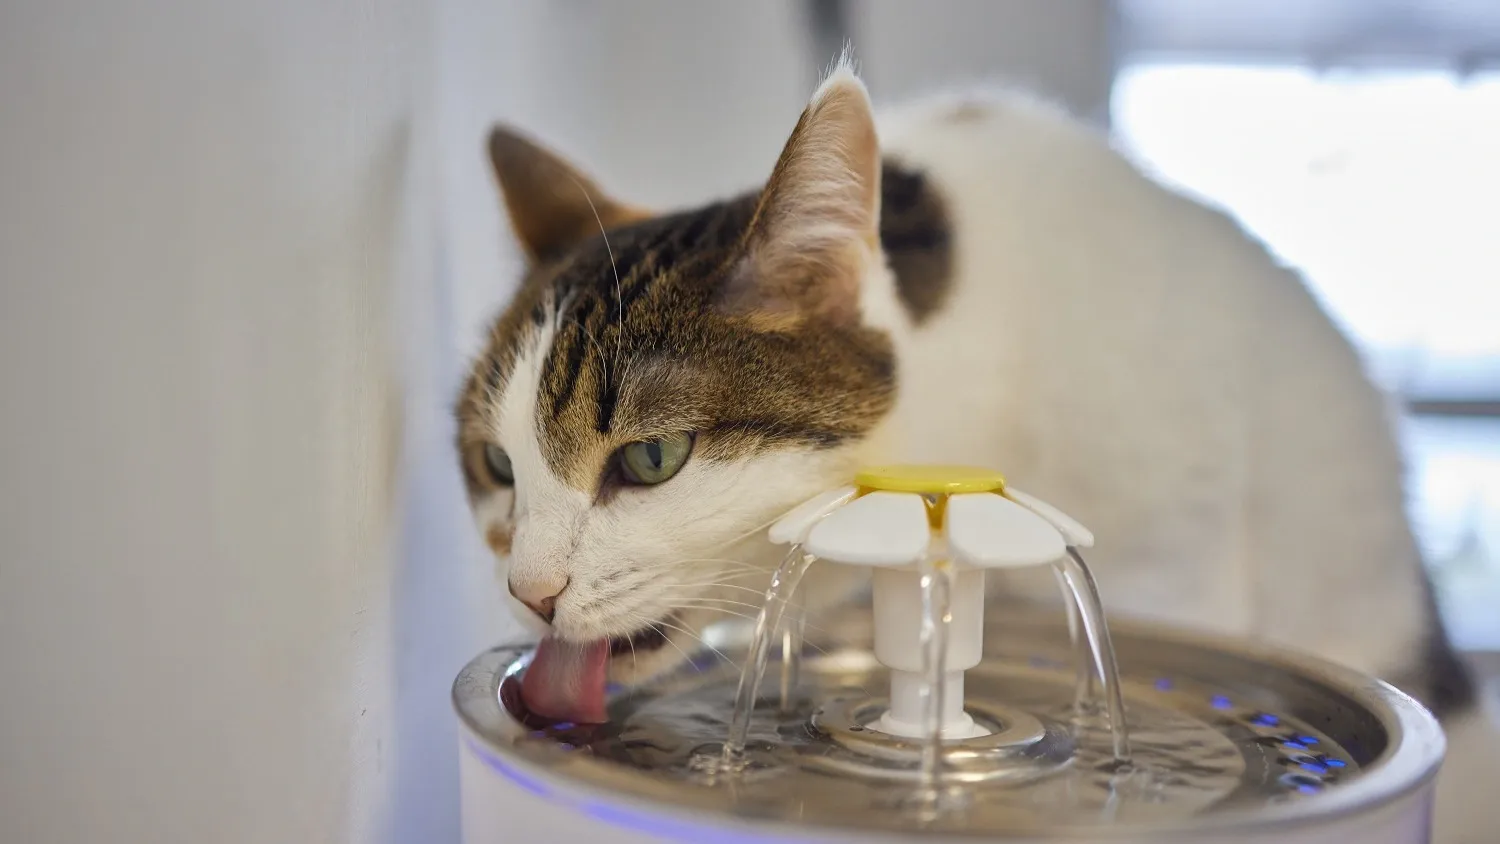 Важно, чтобы у кошек и собак всегда была свежая вода. Фото: Vershinin89/Shutterstock/Fotodom